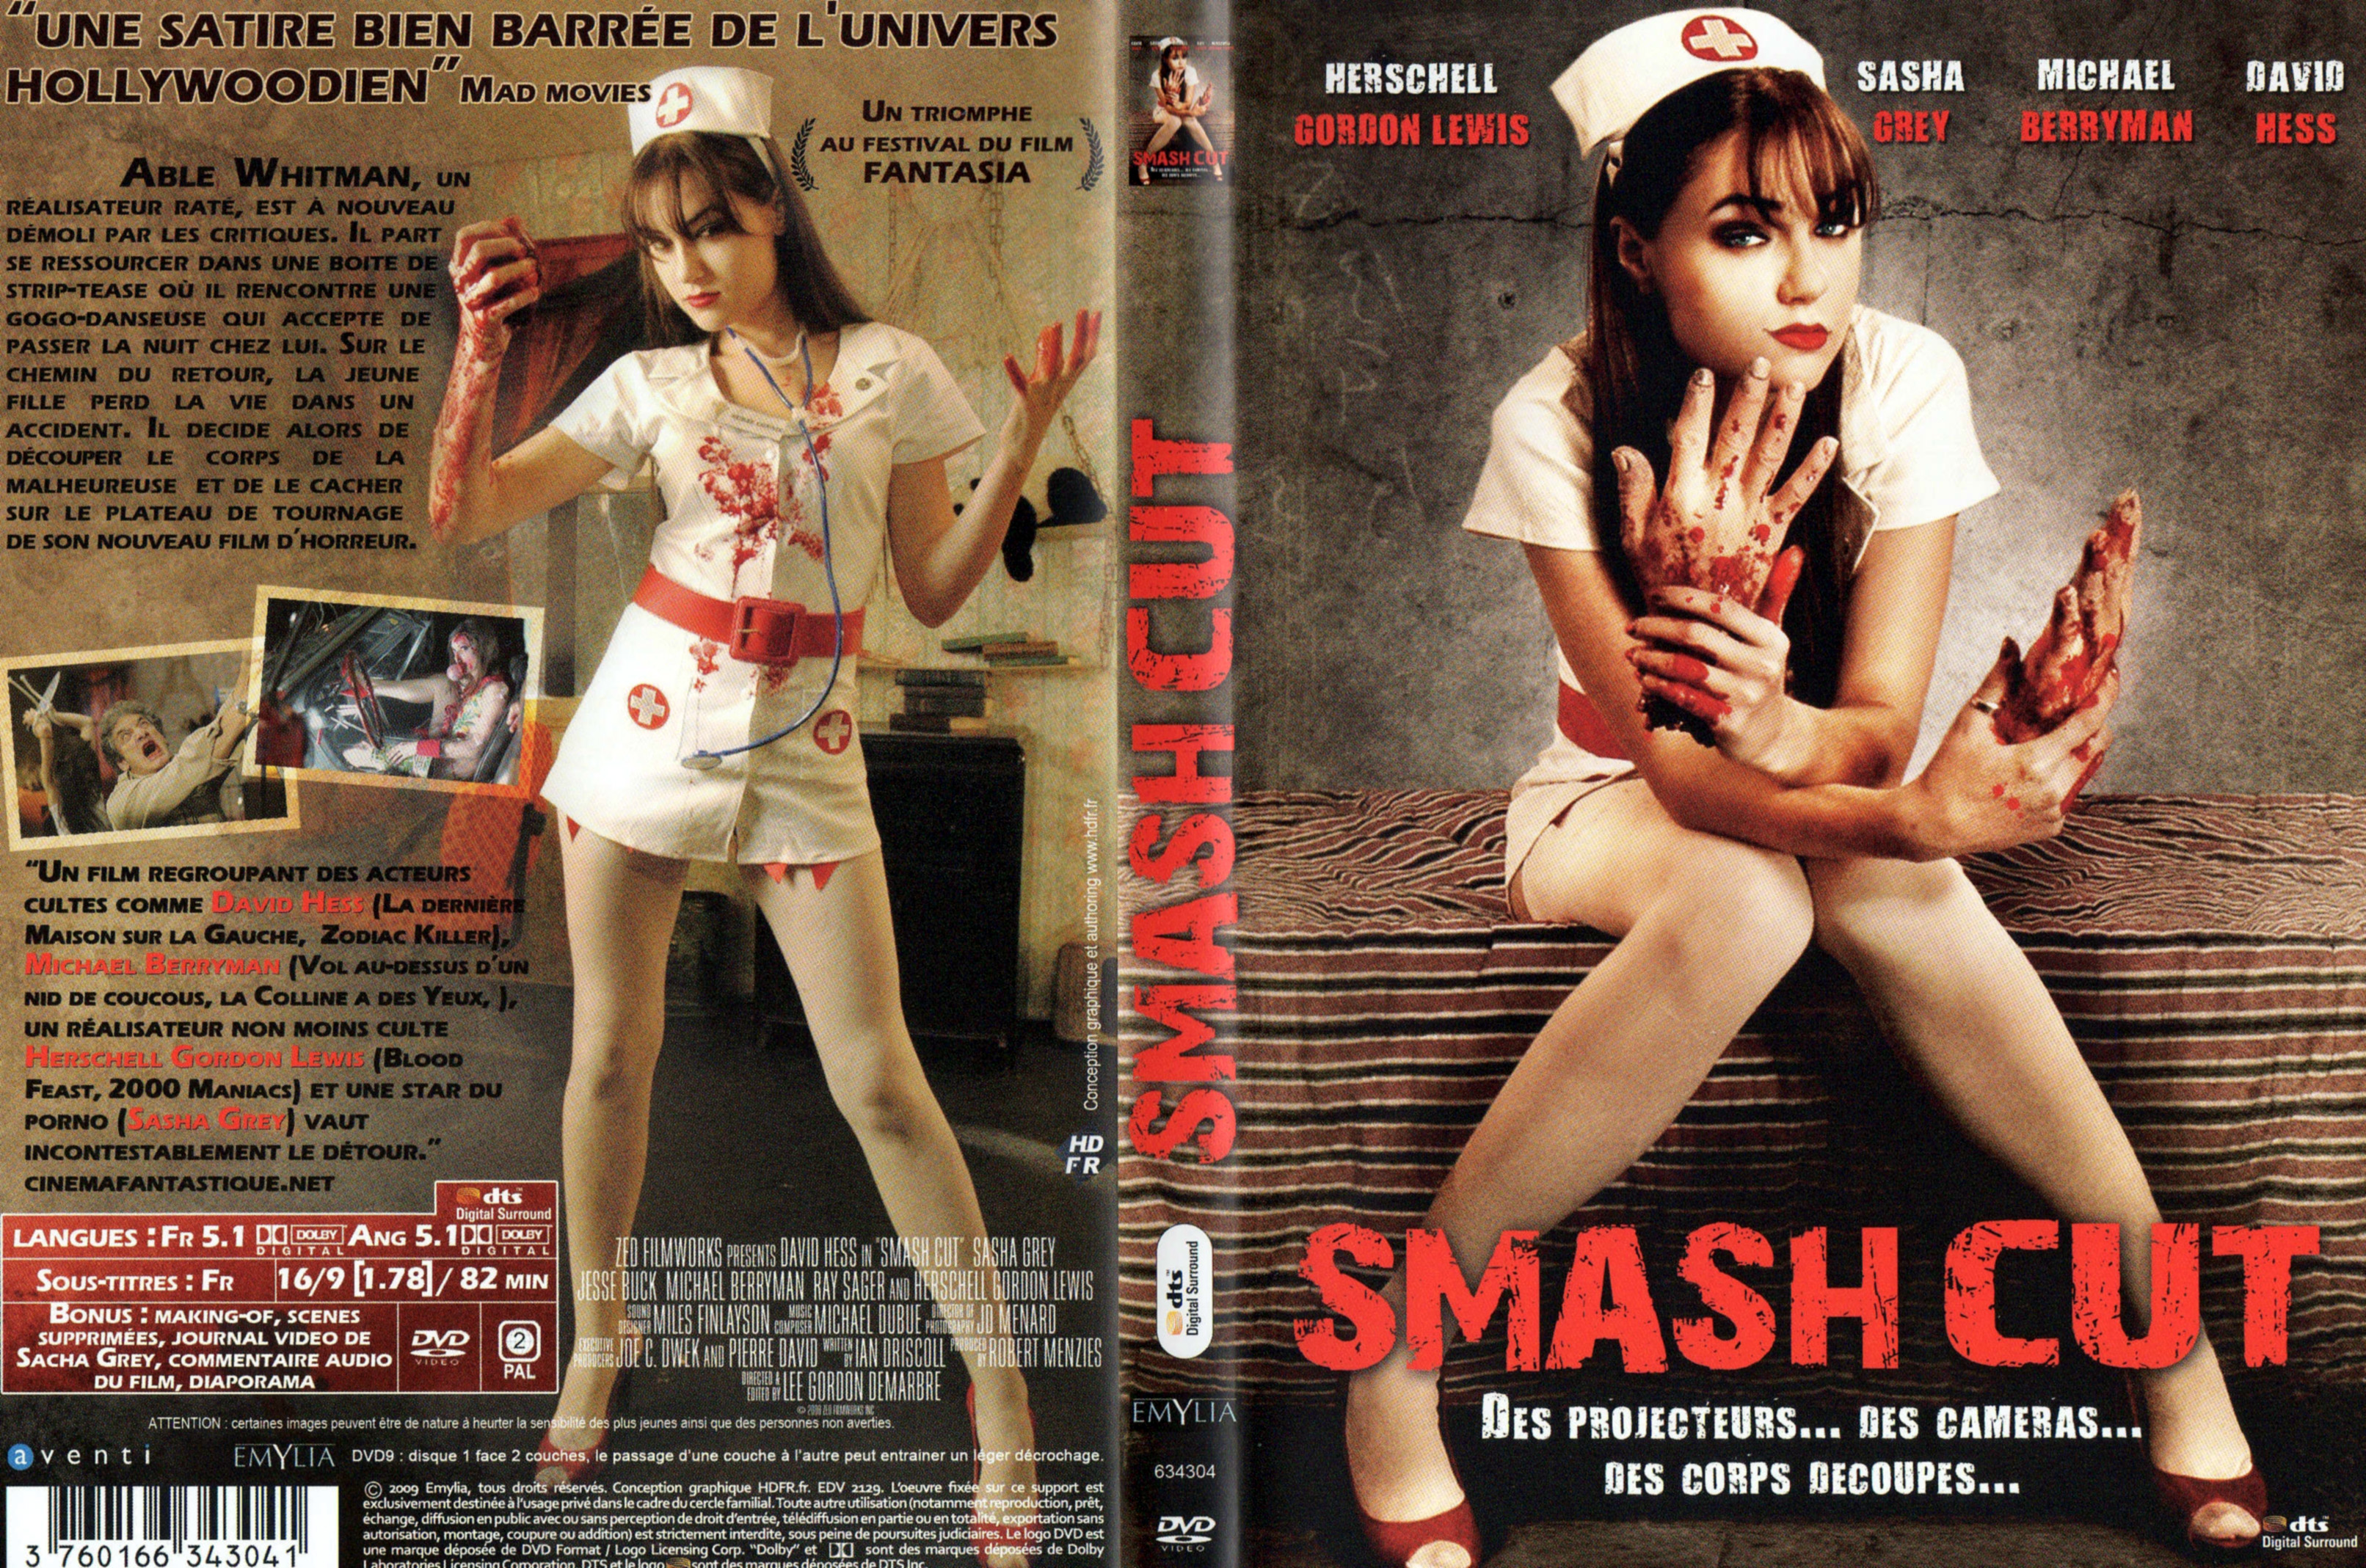 Jaquette DVD Smash cut